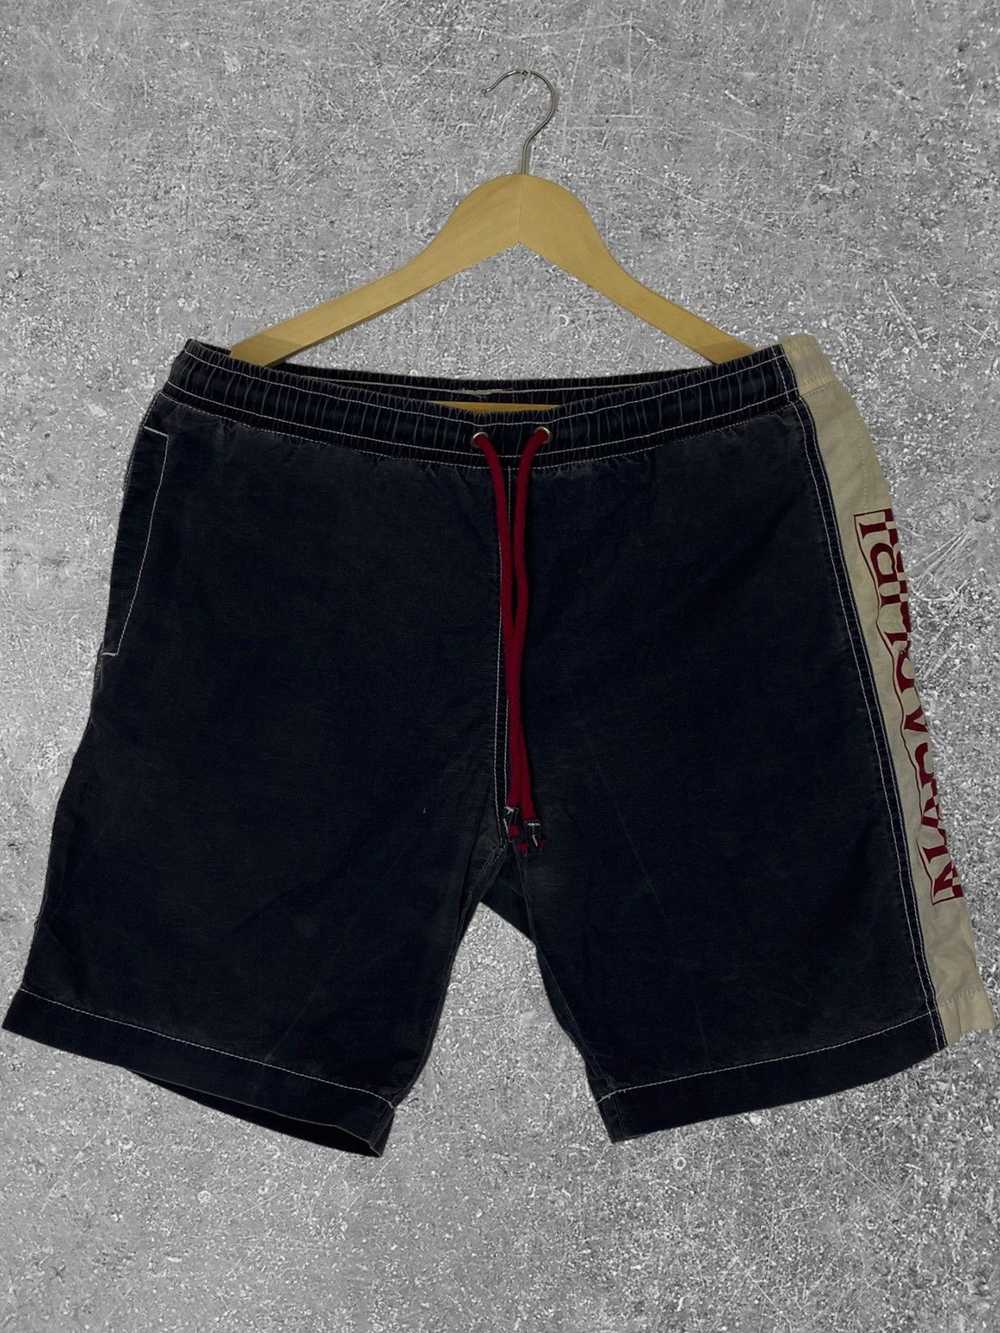 Napapijri × Vintage Vintage swim shorts rare - image 1